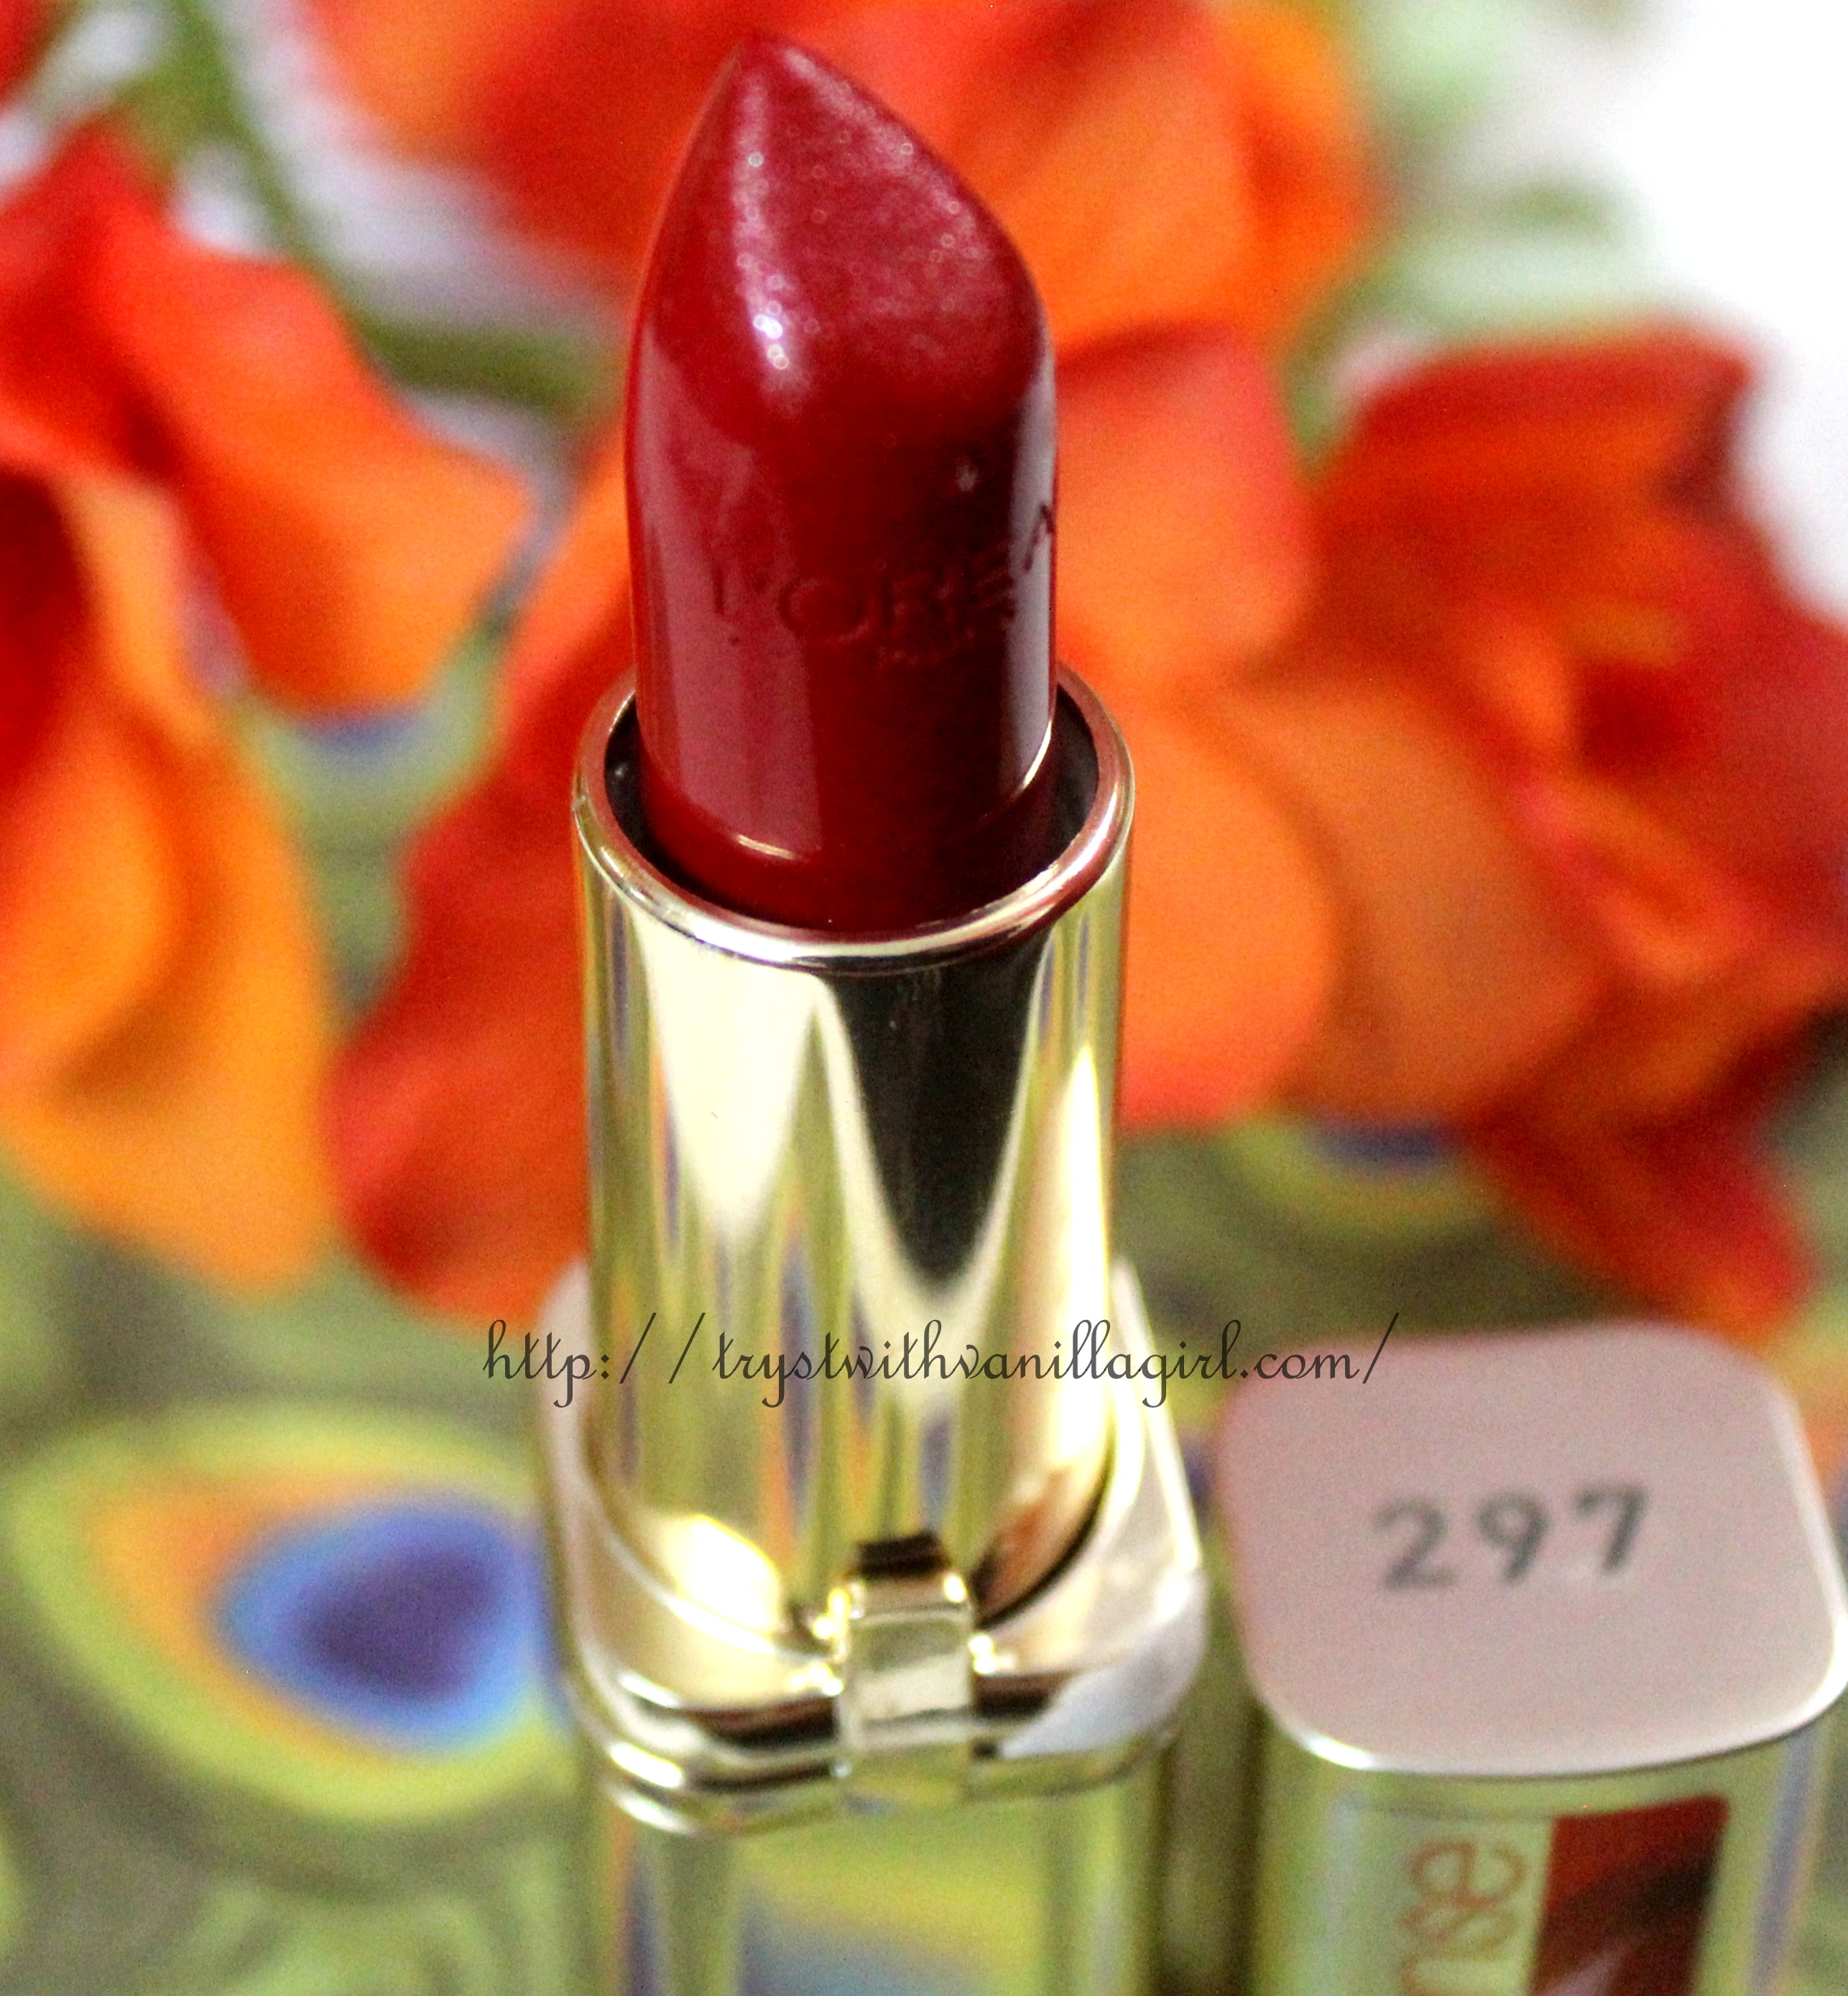 L’Oreal Paris Color Riche Lipstick Intense Red Passion Review